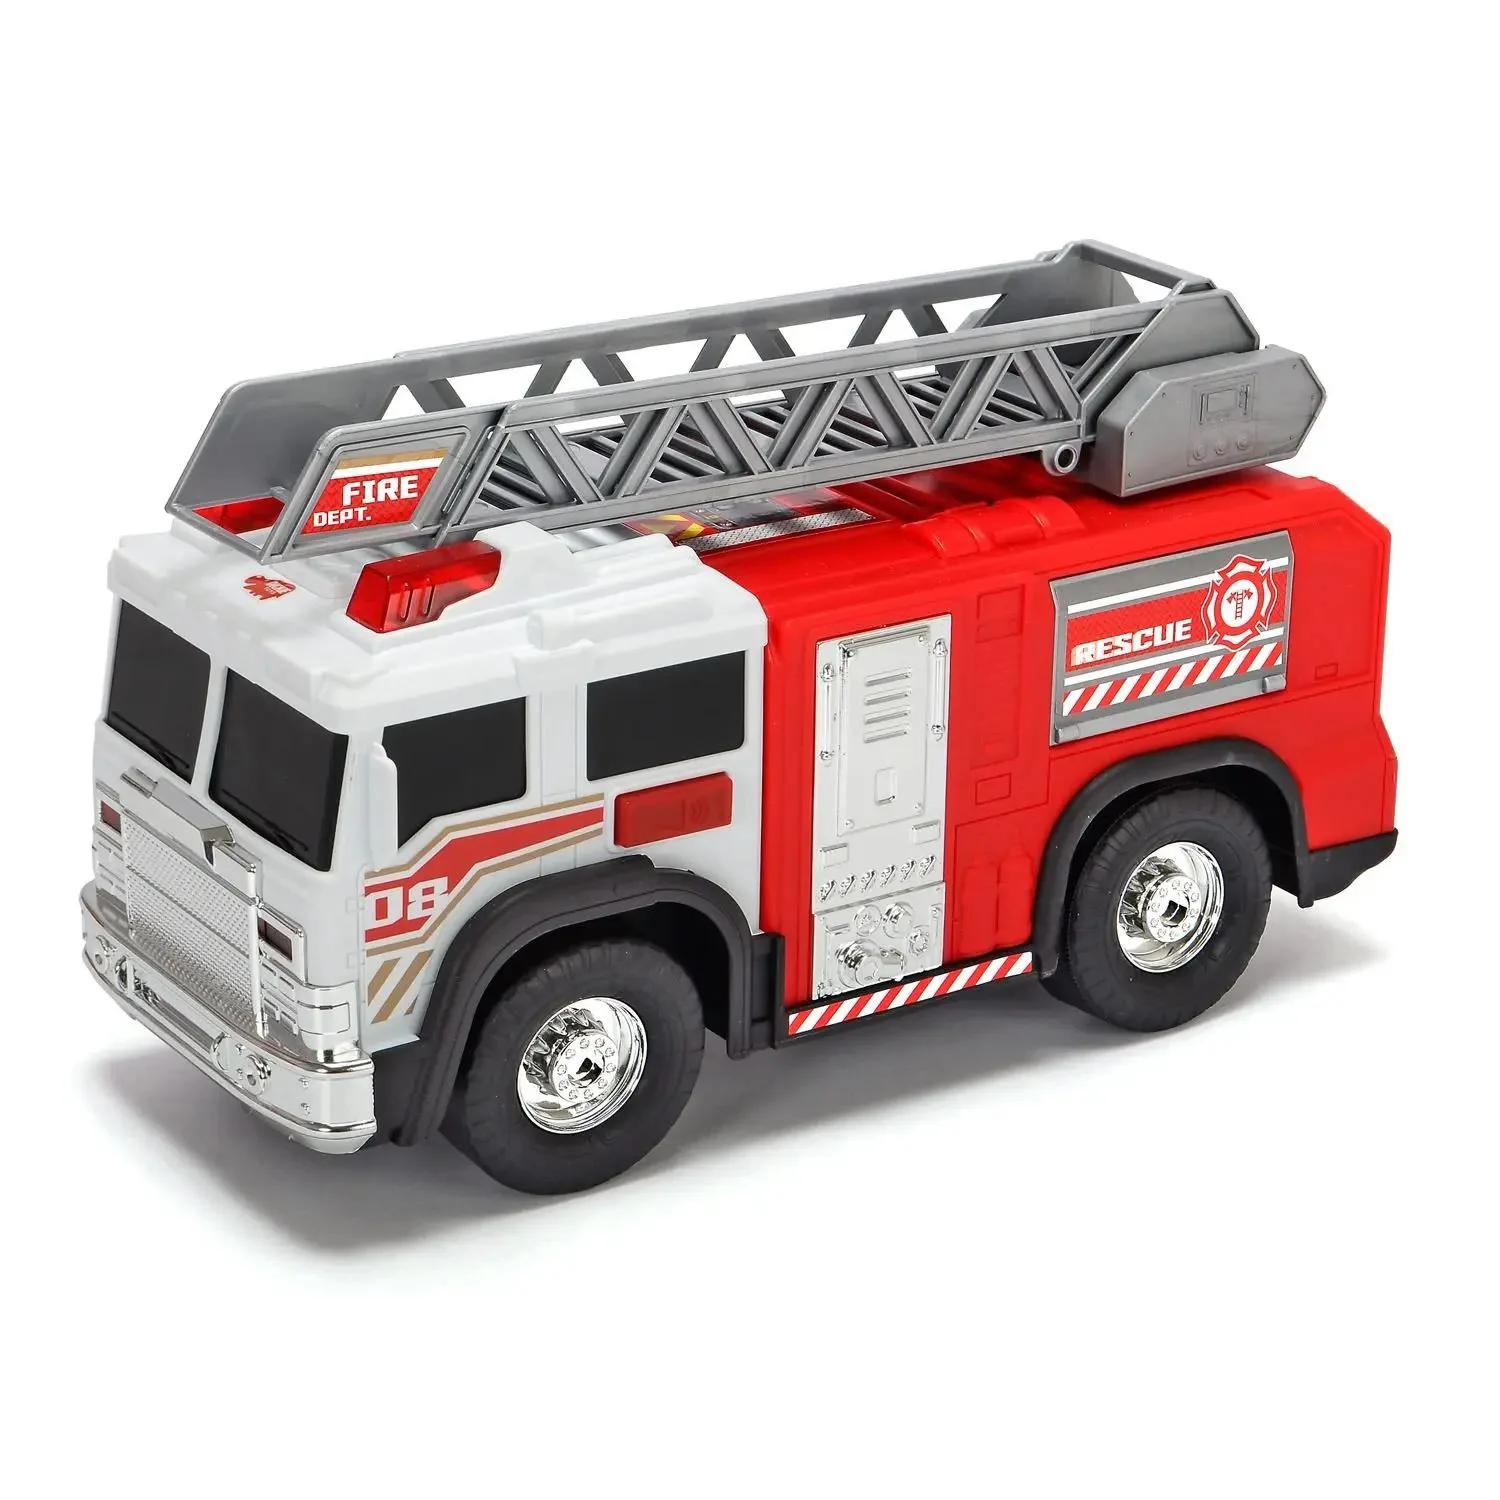 Masina Dickie Pompieri, 30 cm (lumini si sunet)